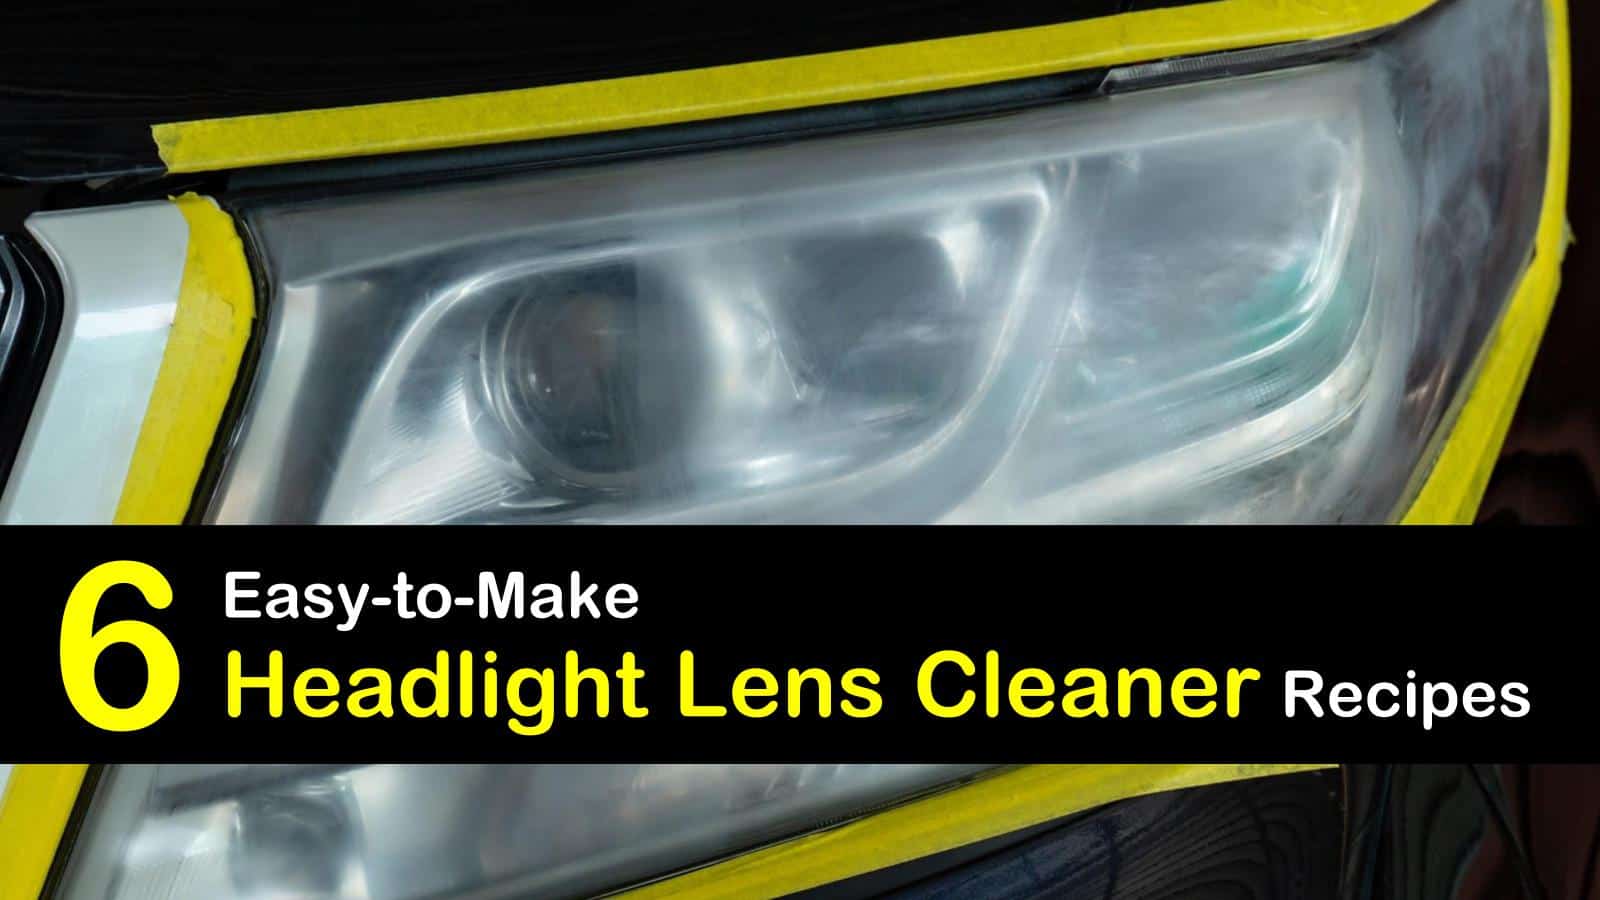 https://www.tipsbulletin.com/wp-content/uploads/2019/09/headlight-lens-cleaner-t1.jpg